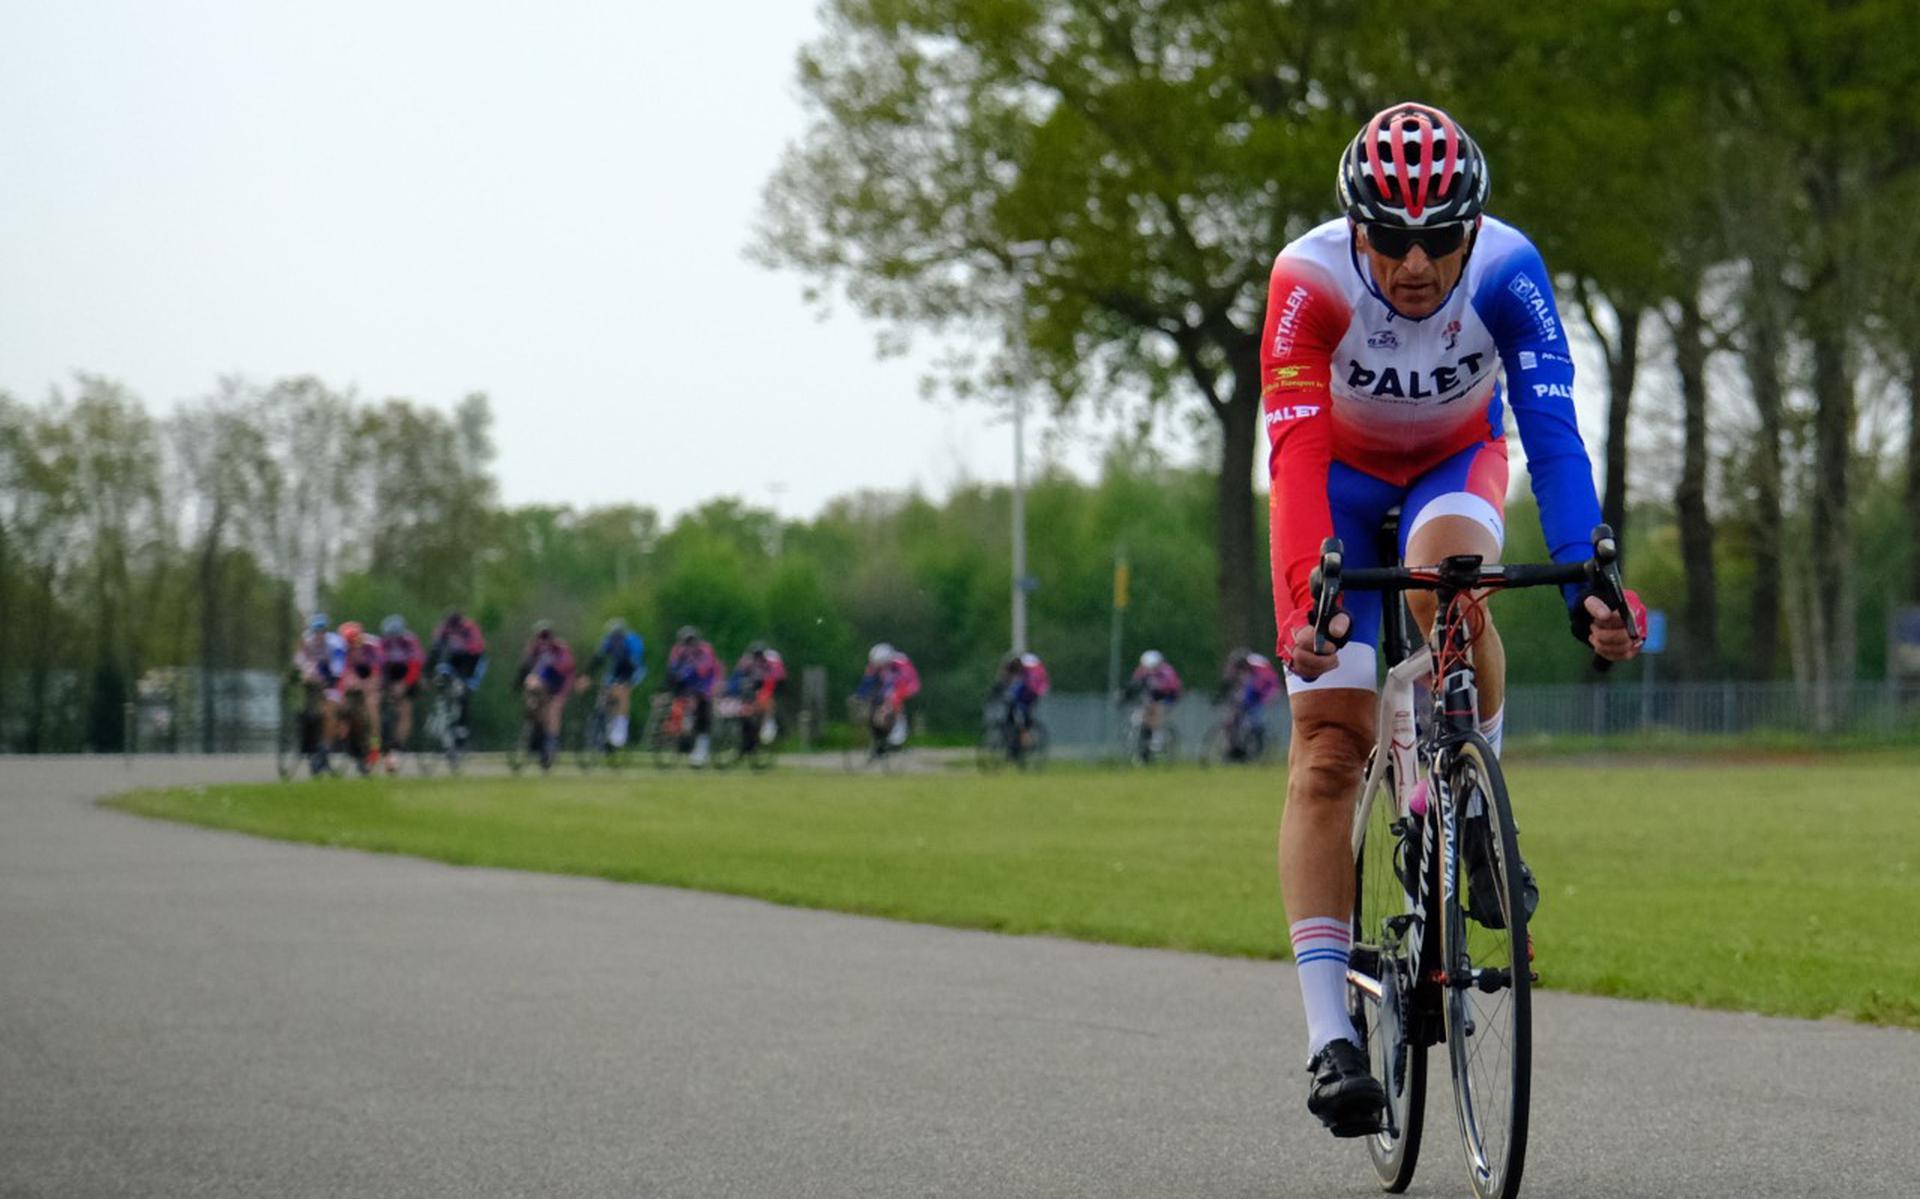 De zomeravondcompetitie is een serie wielerwedstrijden in de wijde regio rond Zwolle.